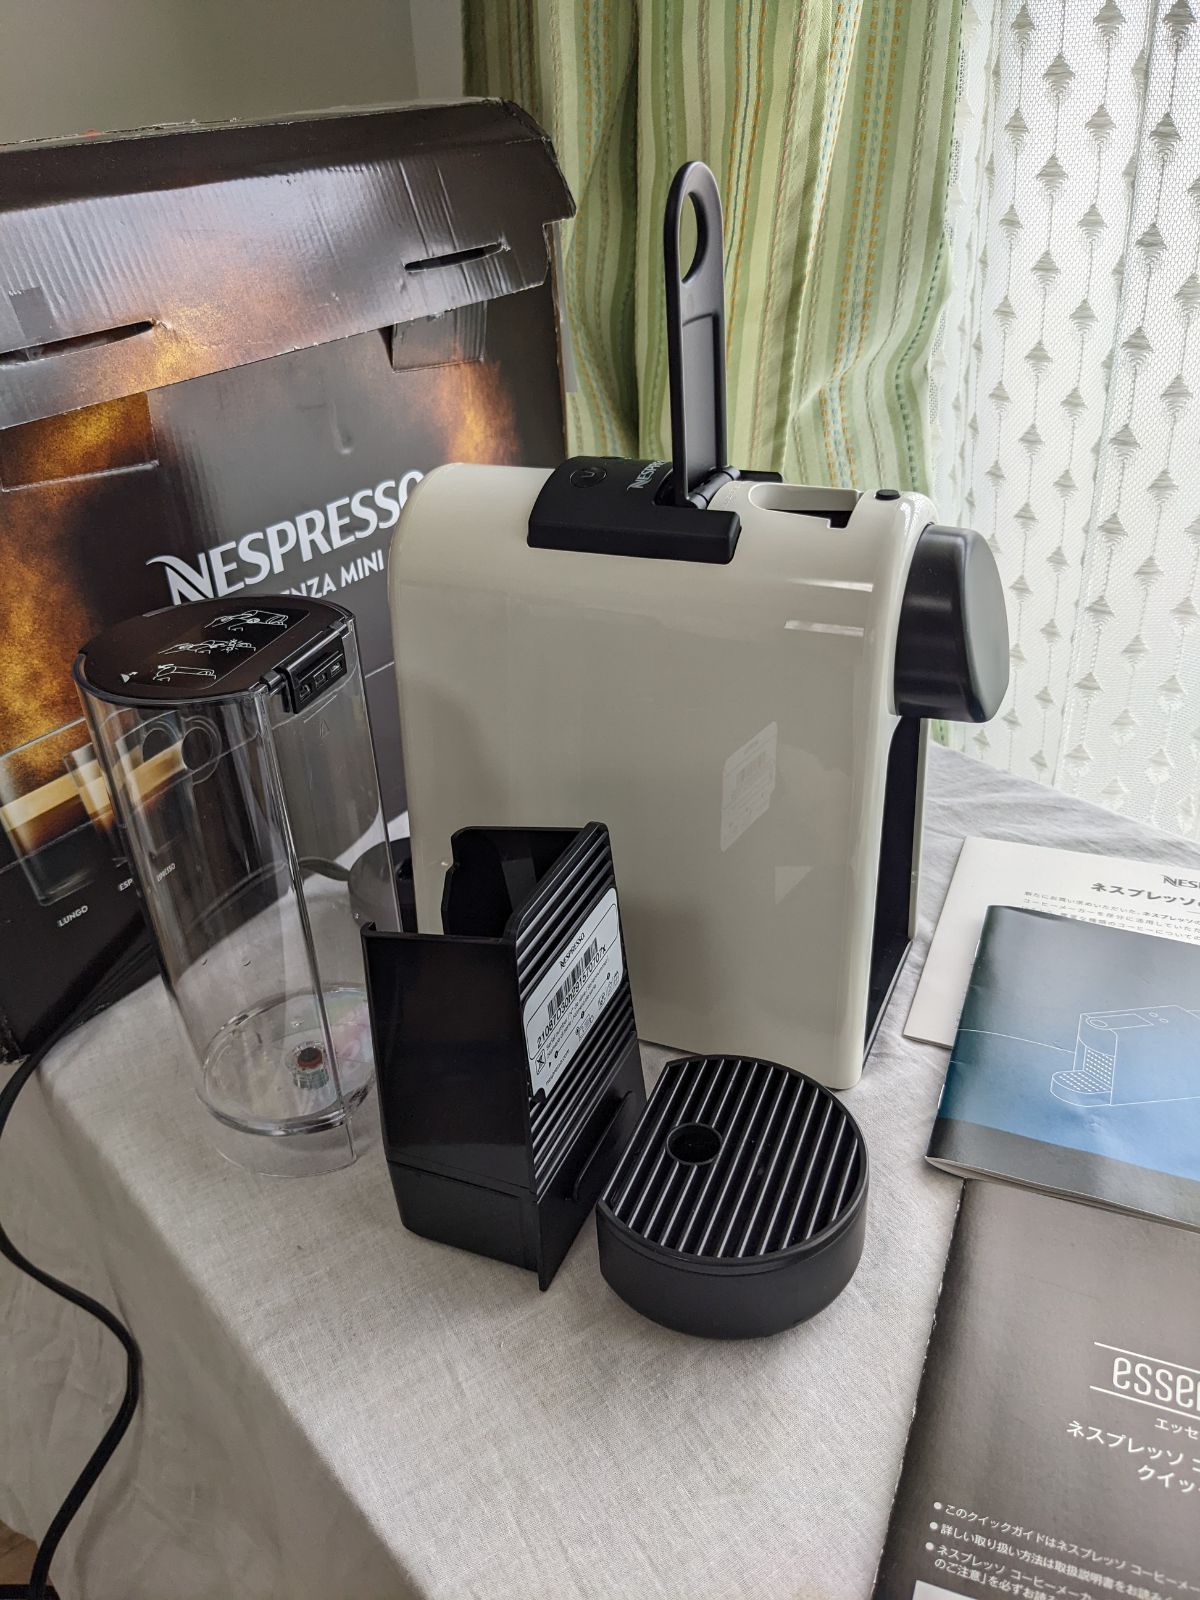 ネスプレッソ 本体 エッセンサミニ C30 2021年製 - コーヒーメーカー 